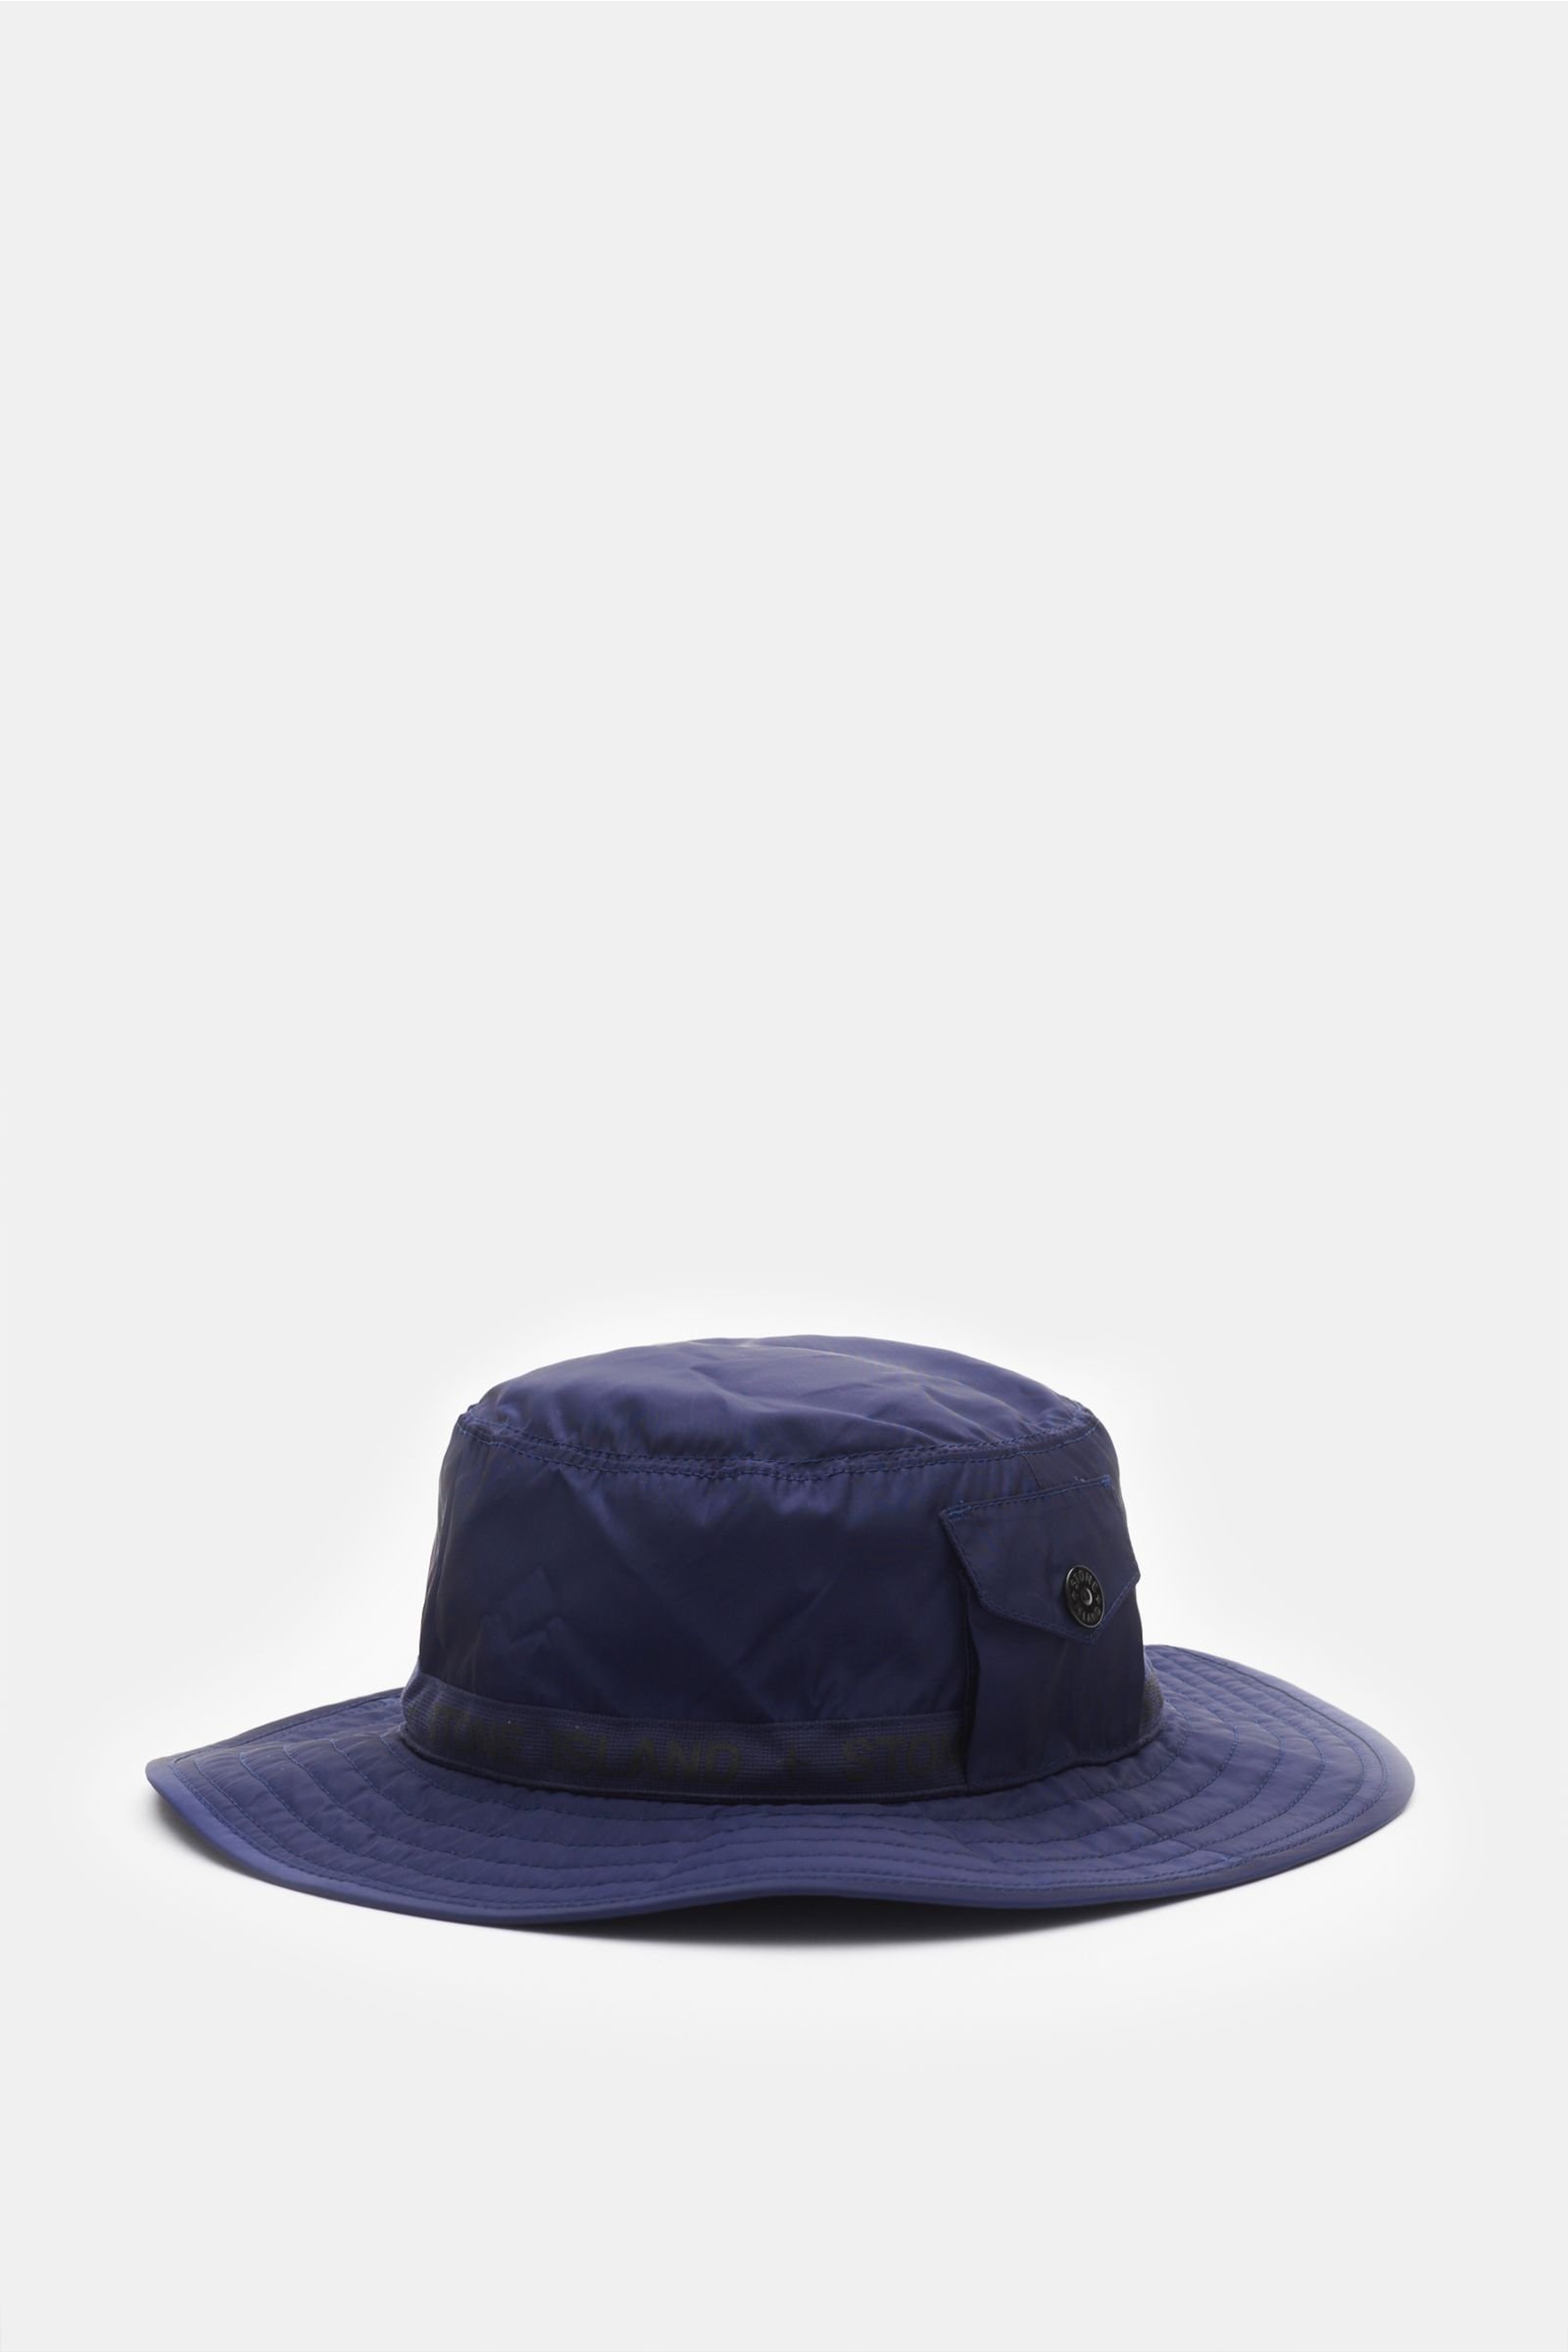 STONE ISLAND bucket hat dark blue